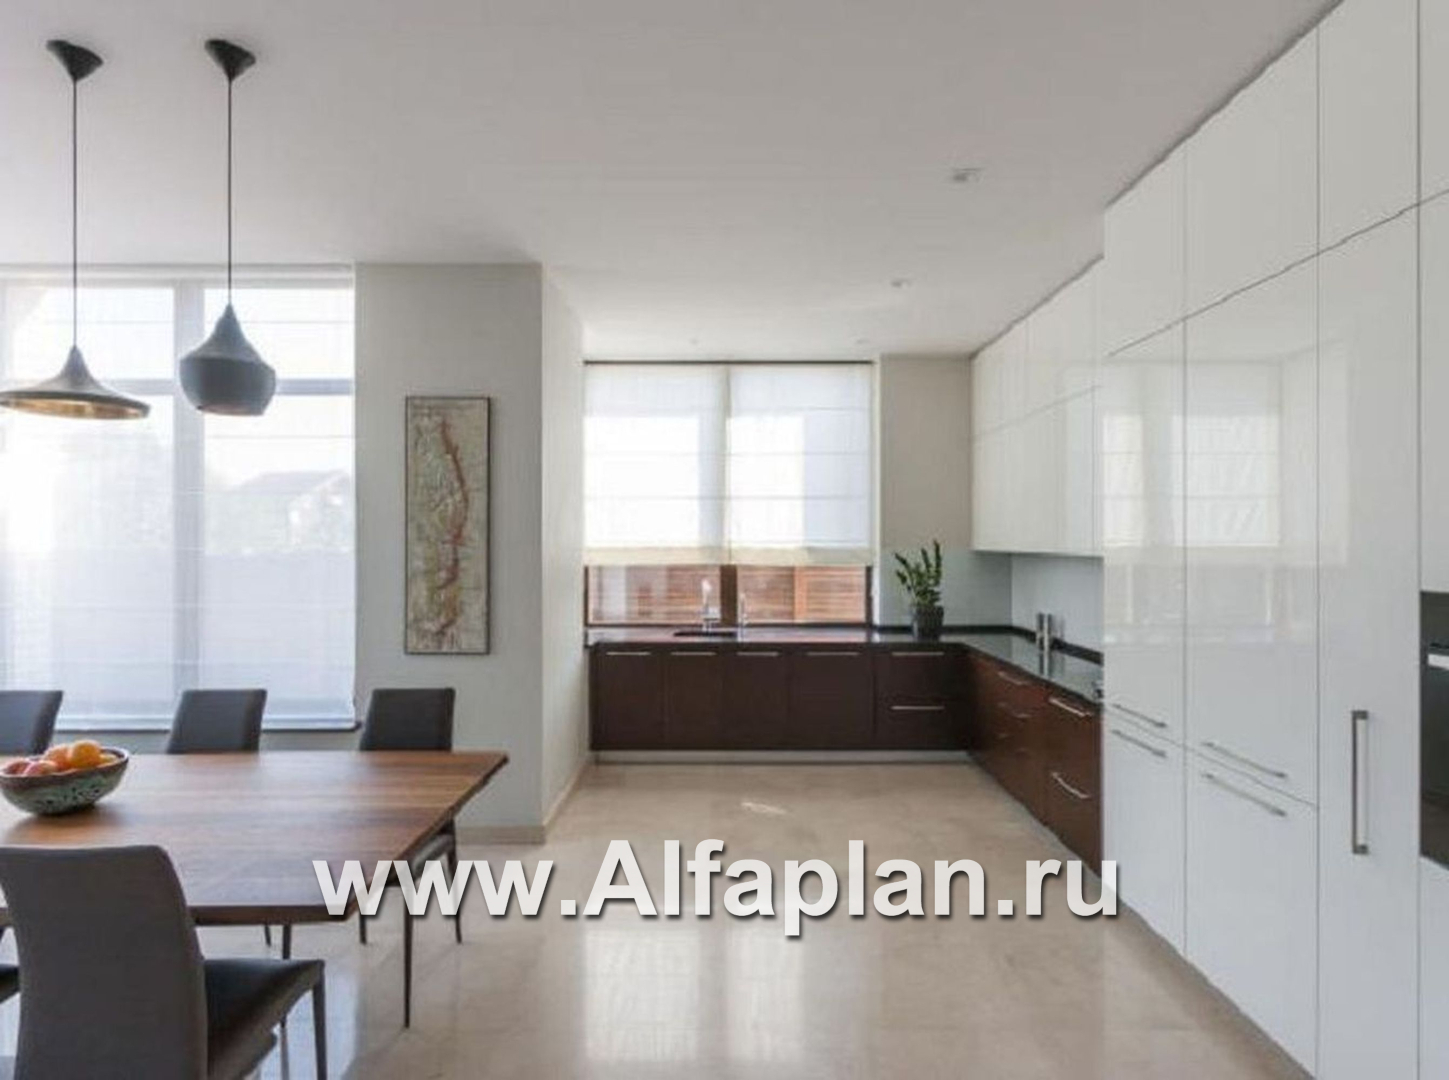 Проекты домов Альфаплан - «Современник» - коттедж с панорамными окнами - дополнительное изображение №6